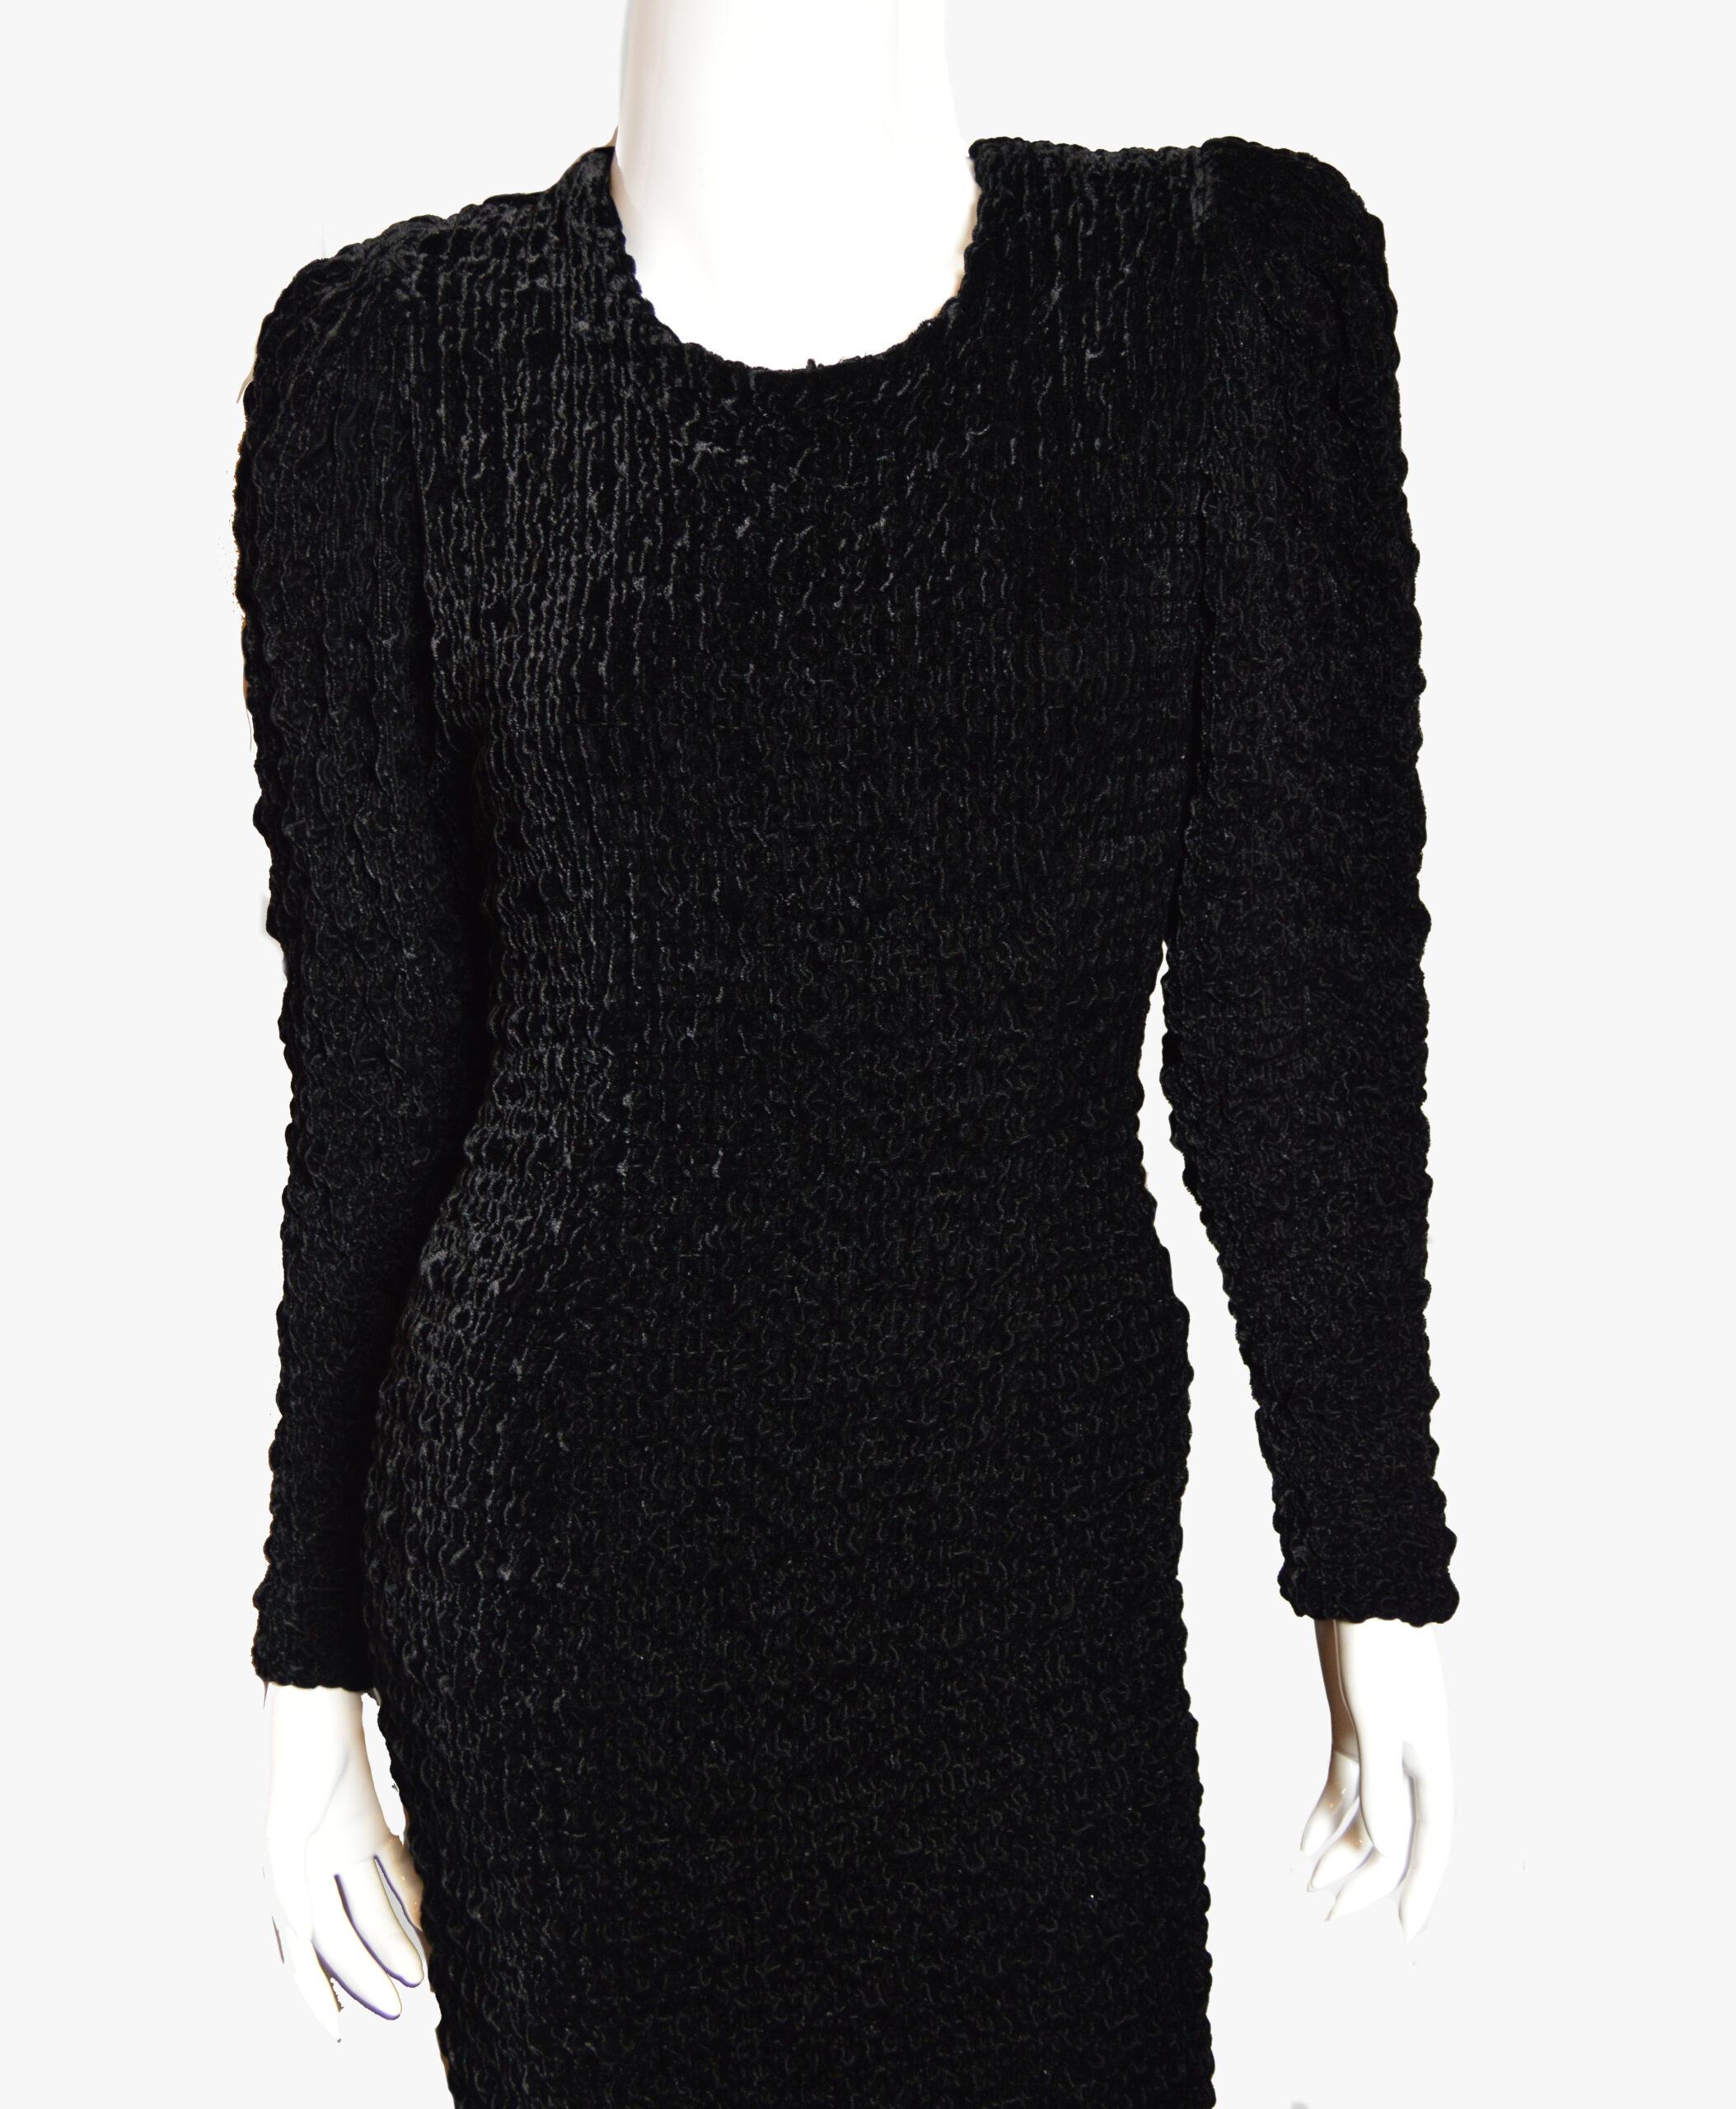 Superbe robe vintage des années 80, fabriquée en Italie. Le velours noir froissé épouse la silhouette et en dessine les contours. L'encolure au dos et le volant à l'ourlet de la robe constituent des ajouts intéressants.
Il n'y a pas d'étiquette de